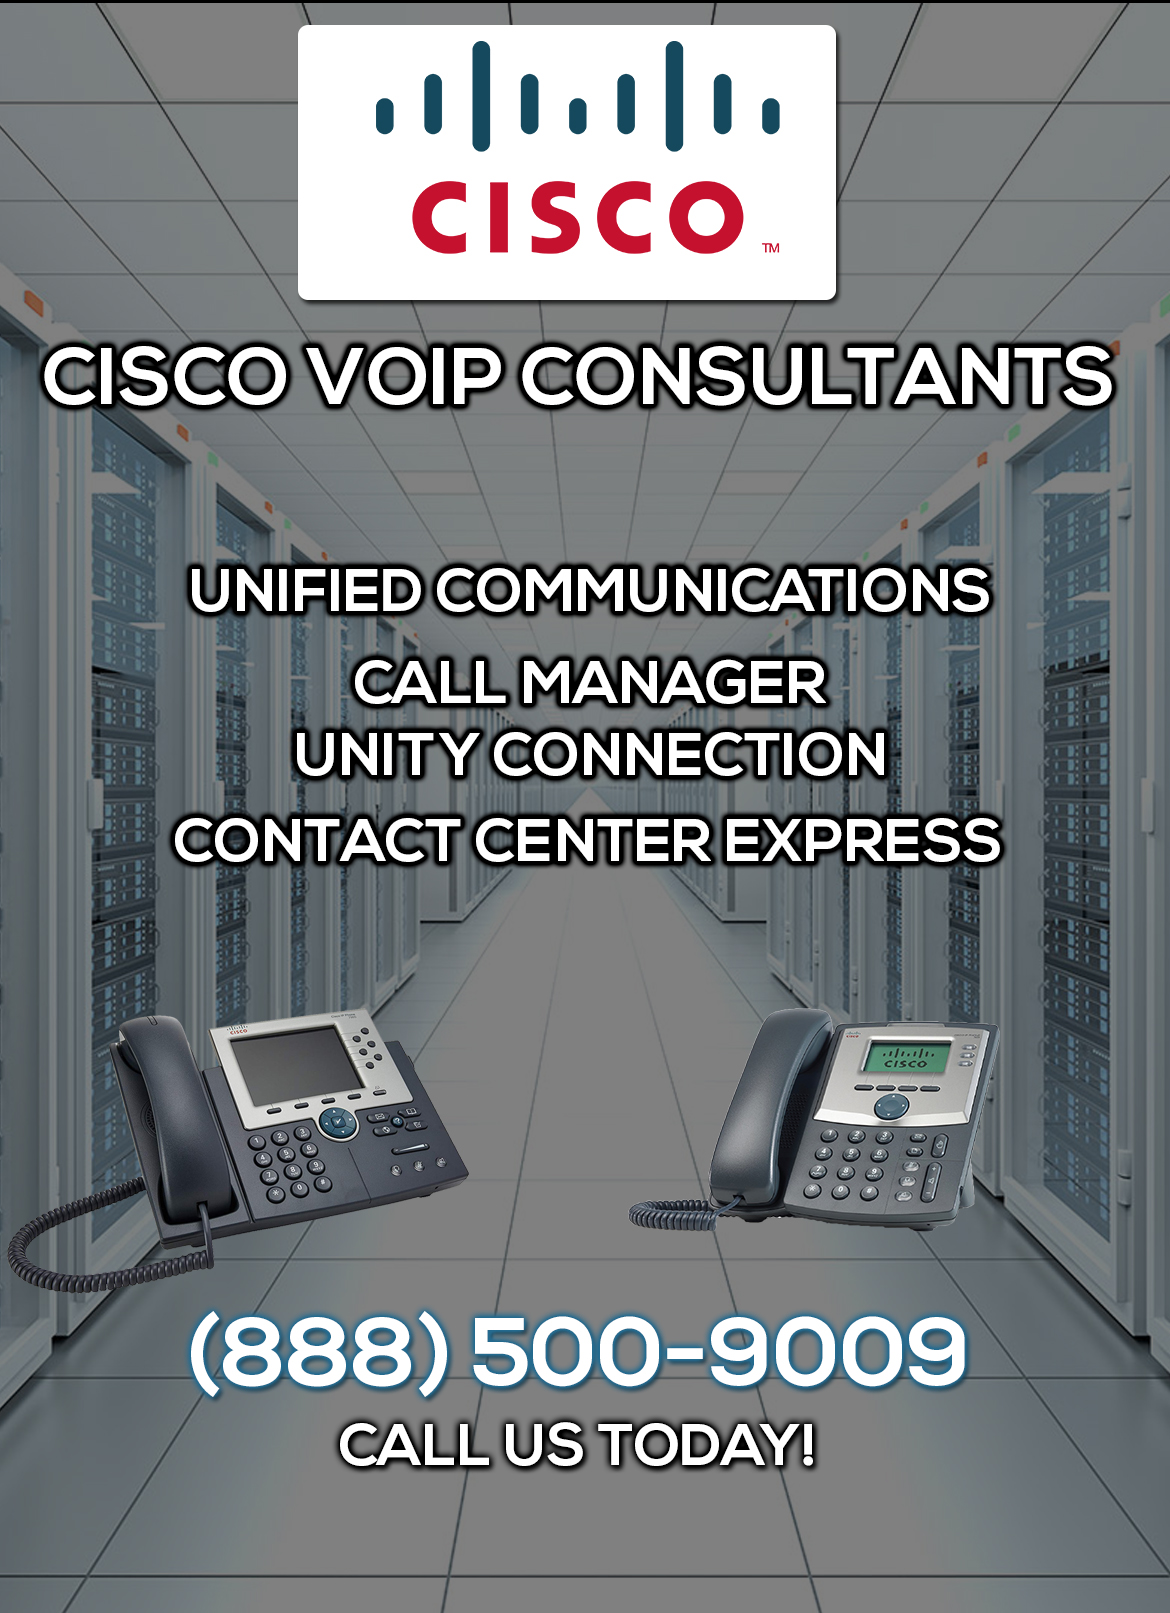 Cisco VoIP Consultants San Clemente